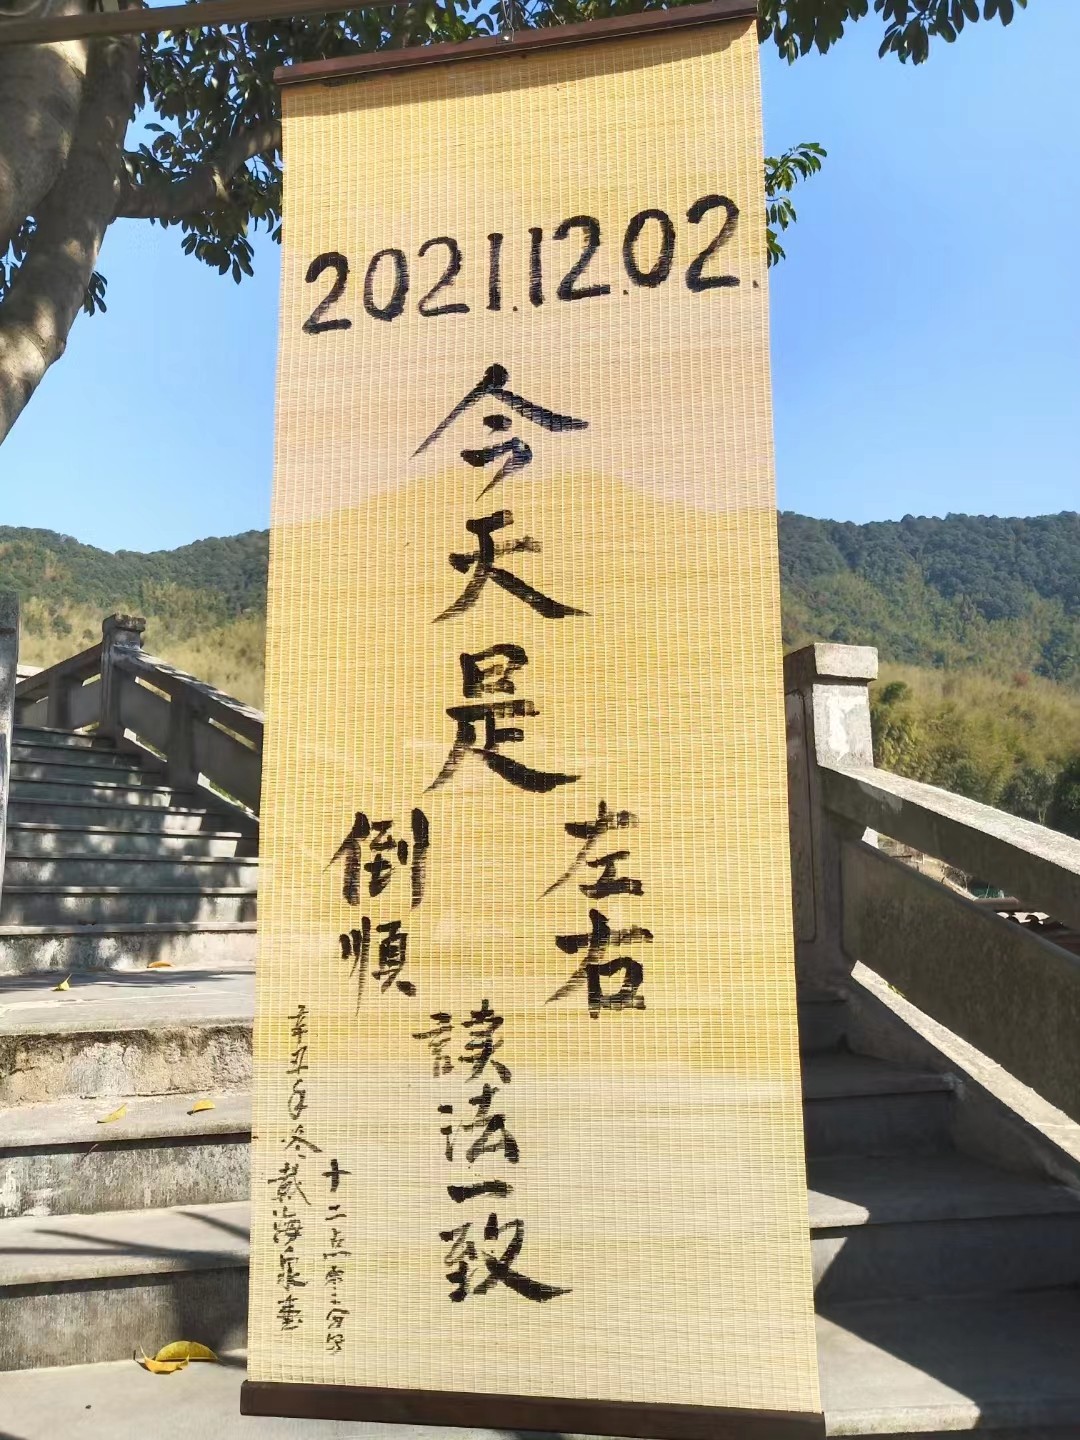 COTV全球直播-杭州富阳望月竹制品有限公司专业研发制作各种竹工艺制品，欢迎大家光临！